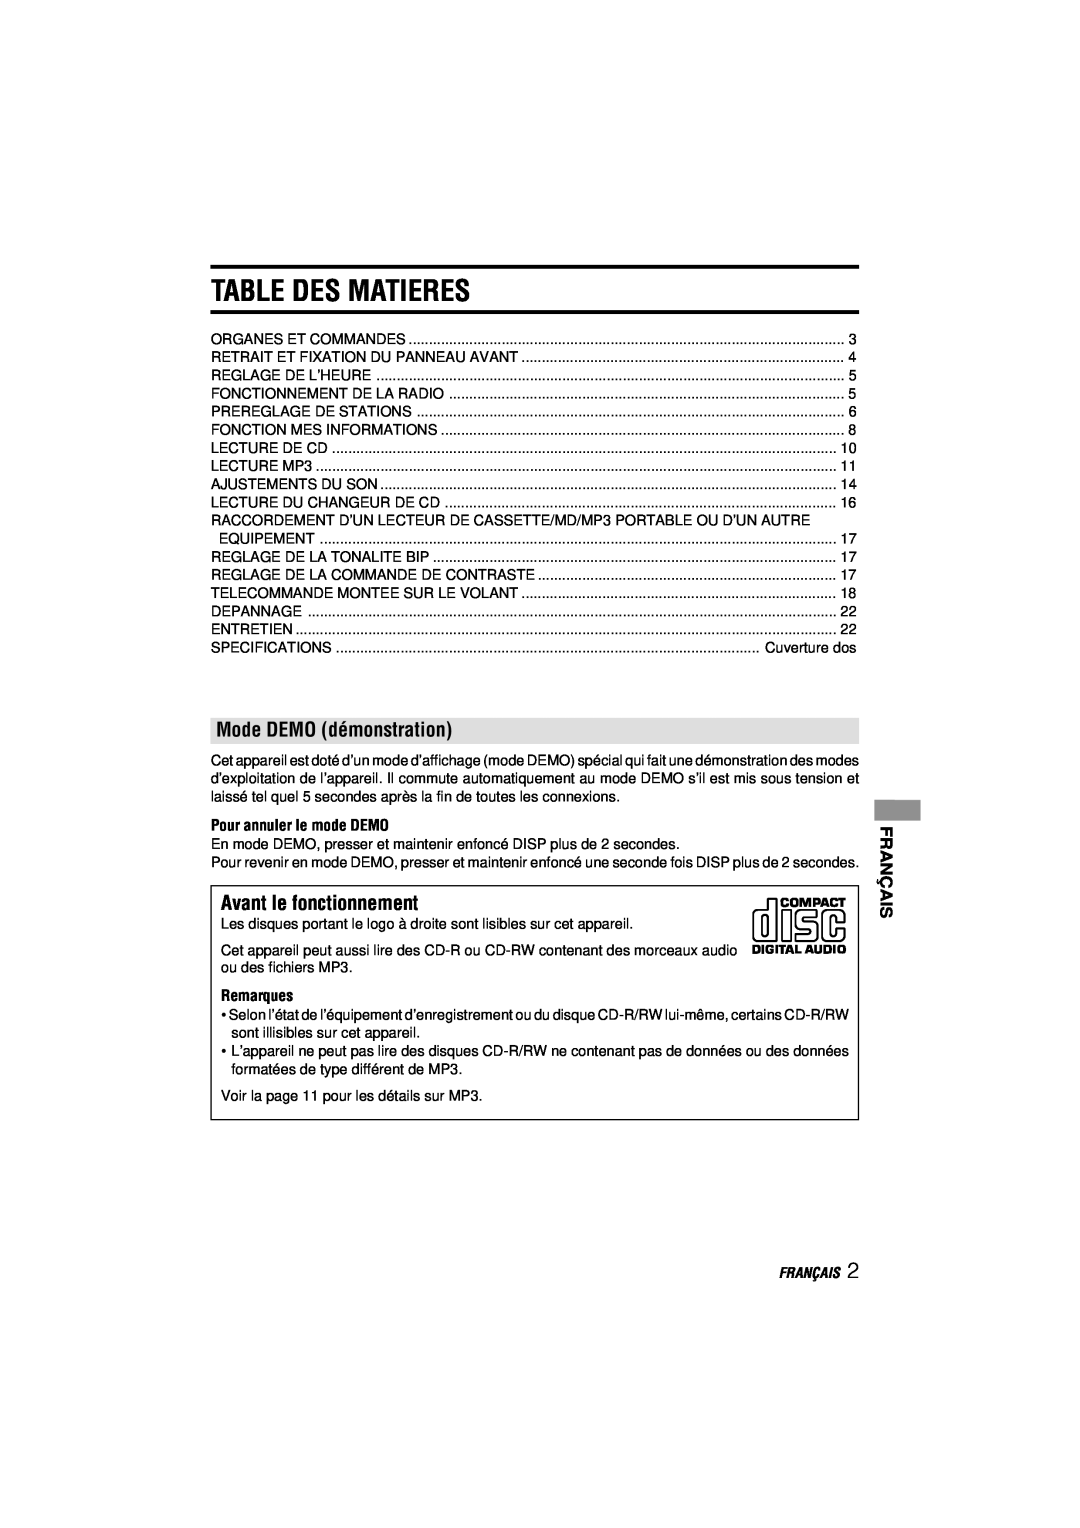 Aiwa CDC-MP3 manual Table Des Matieres, Mode DEMO démonstration, Avant le fonctionnement, Français 